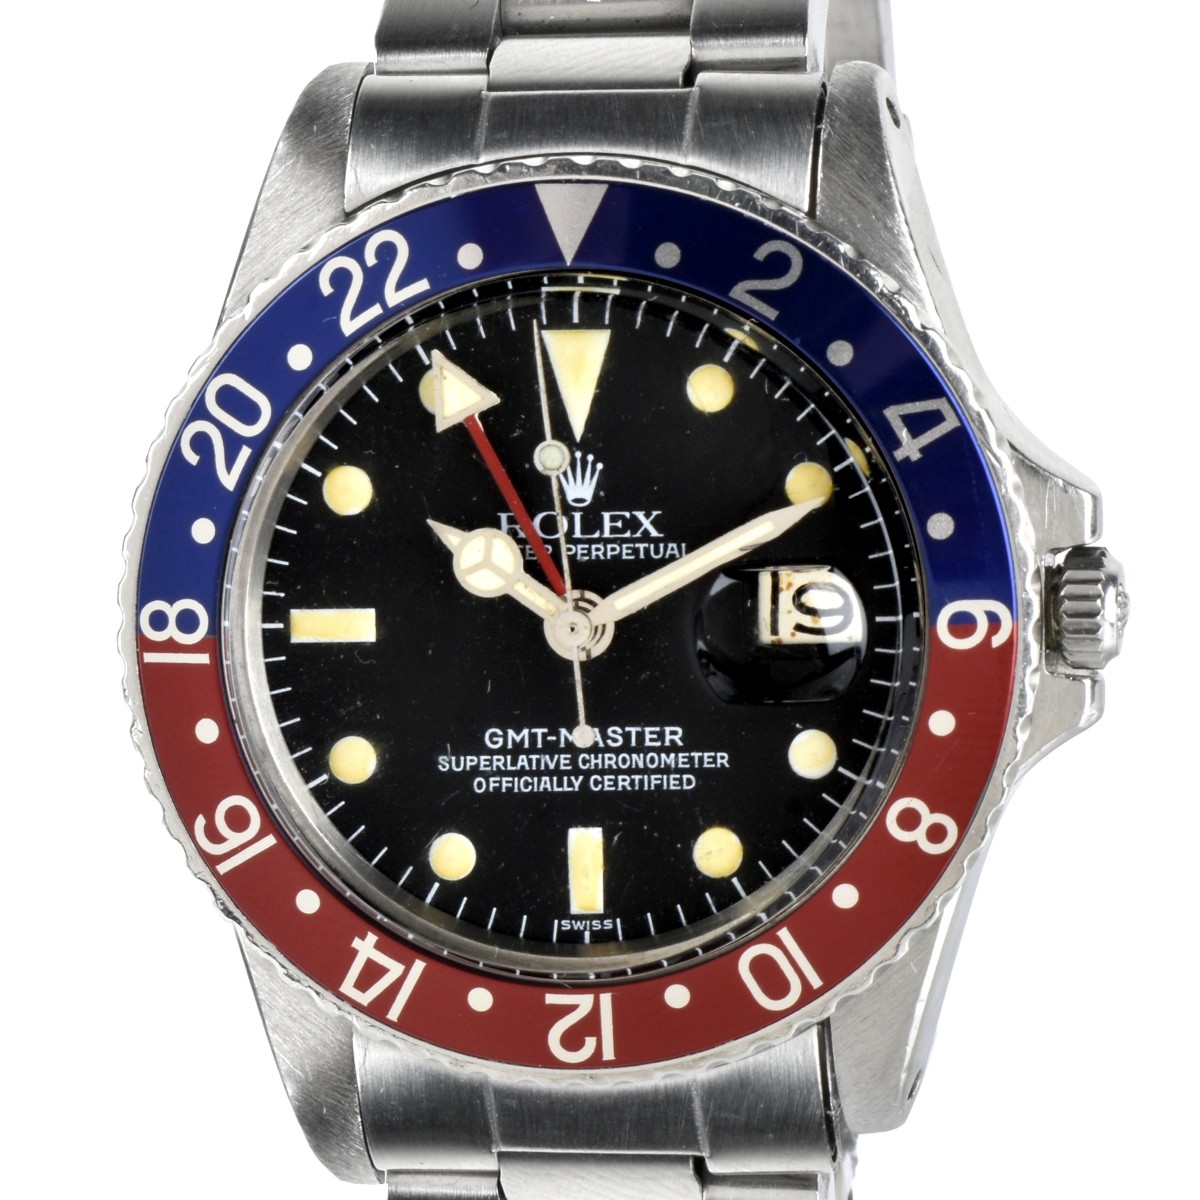 Rolex GMT-Master Ref. 1675 Watch